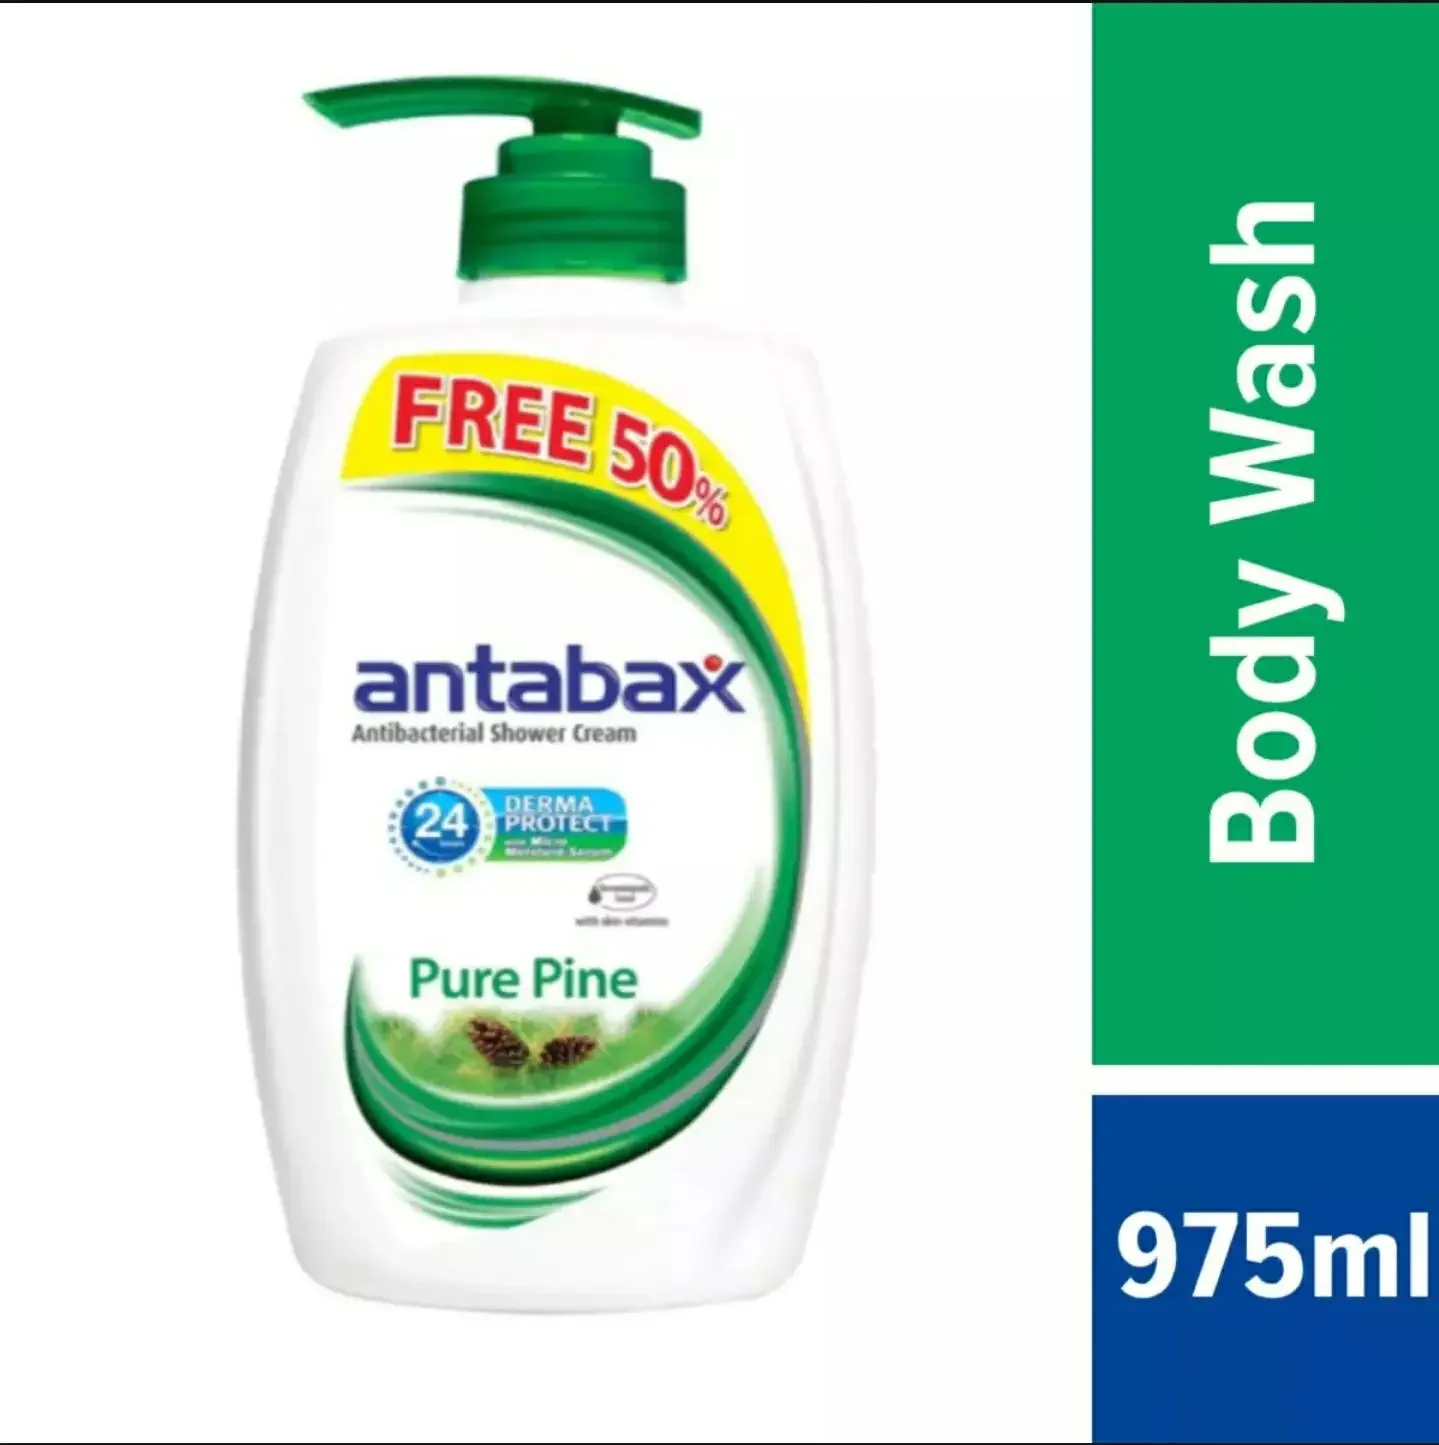 Antabax Pure Pine Antibacterial Shower Cream 650ml+Free 50% (975ml)